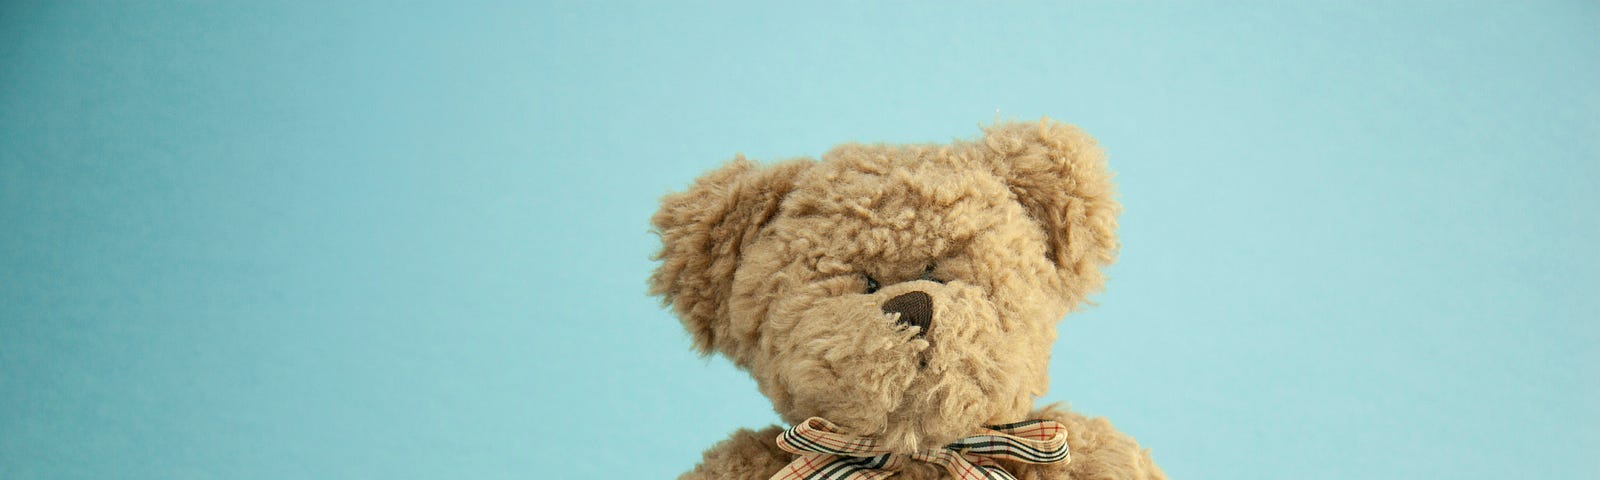 A soft toy teddy bear